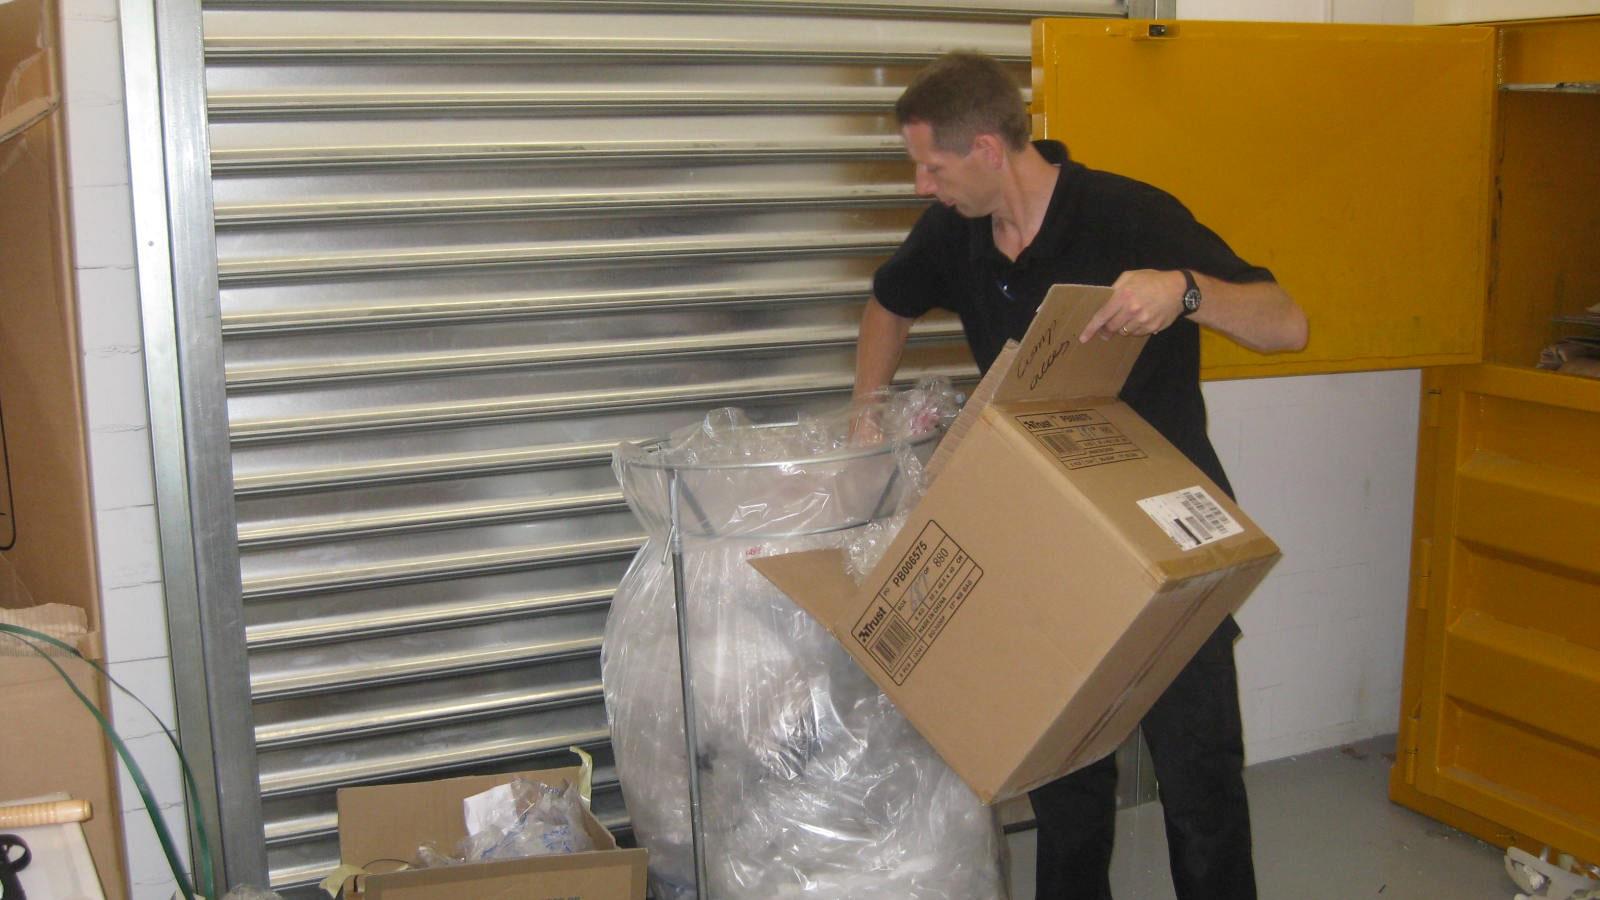 Medarbejder fra Media Markt kommer blødt plastaffald i et affaldsstativ